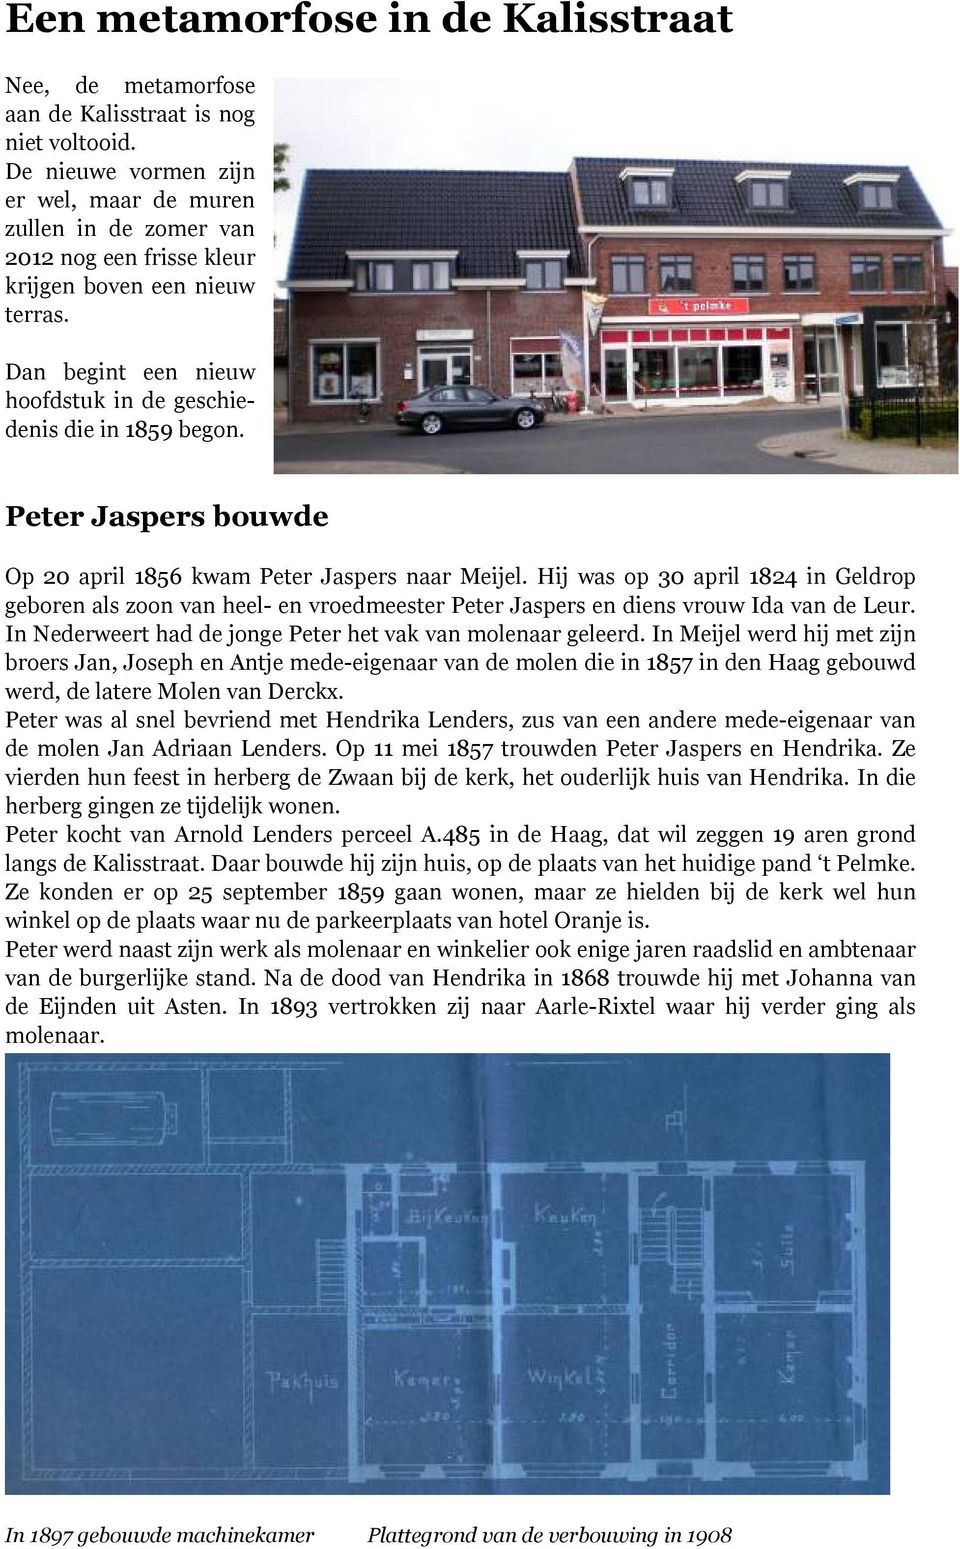 Peter Jaspers bouwde Op 20 april 1856 kwam Peter Jaspers naar Meijel. Hij was op 30 april 1824 in Geldrop geboren als zoon van heel- en vroedmeester Peter Jaspers en diens vrouw Ida van de Leur.